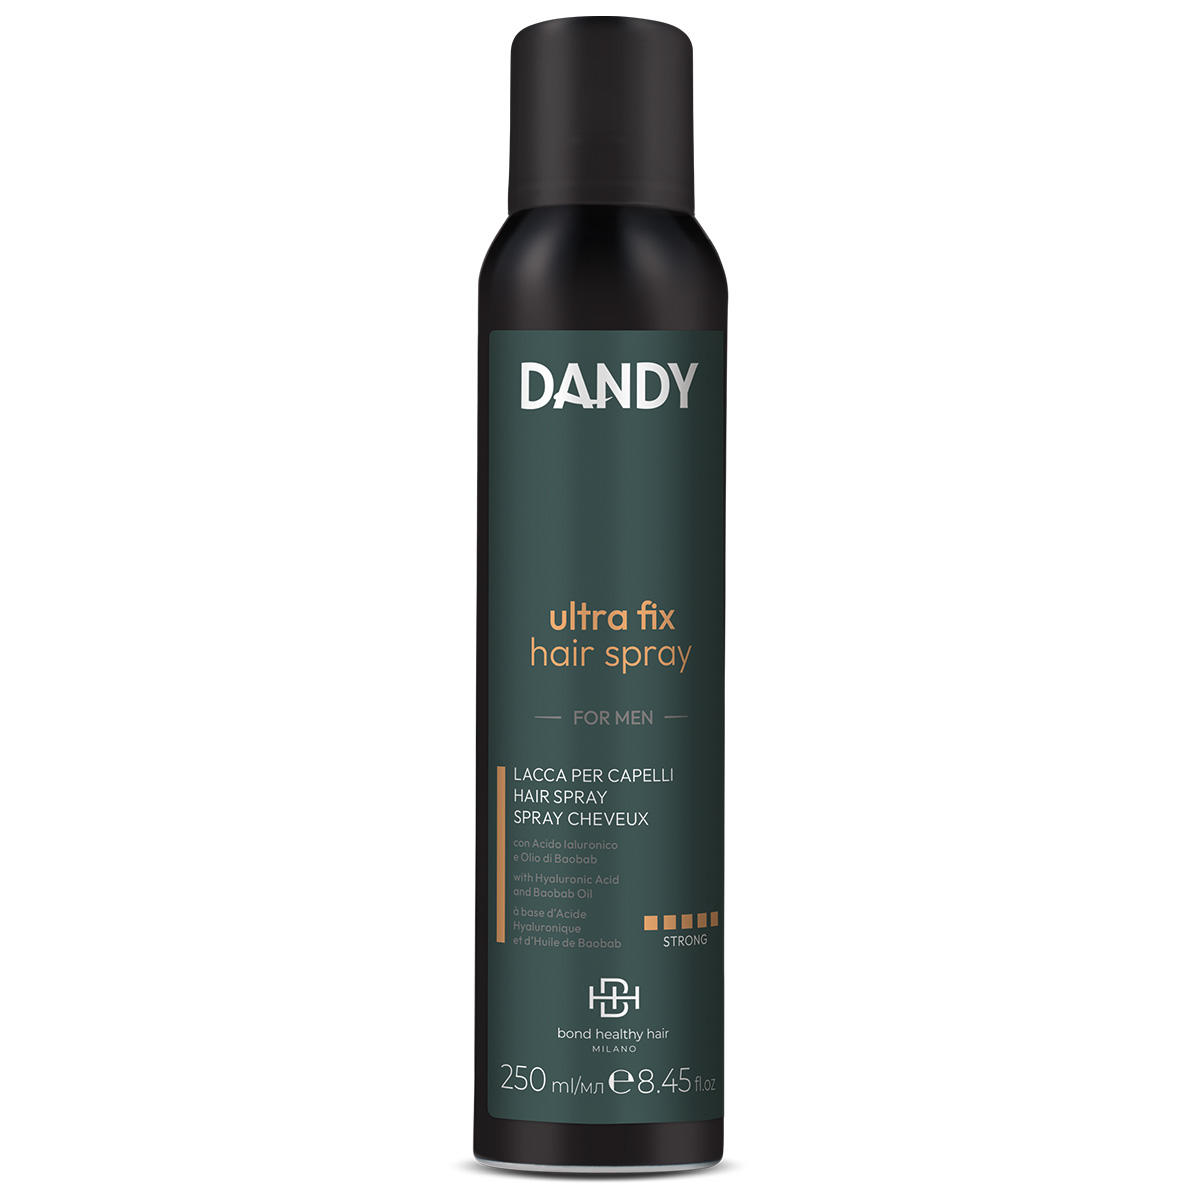 DANDY Ultra Fix Hair Spray 250 ml - 1